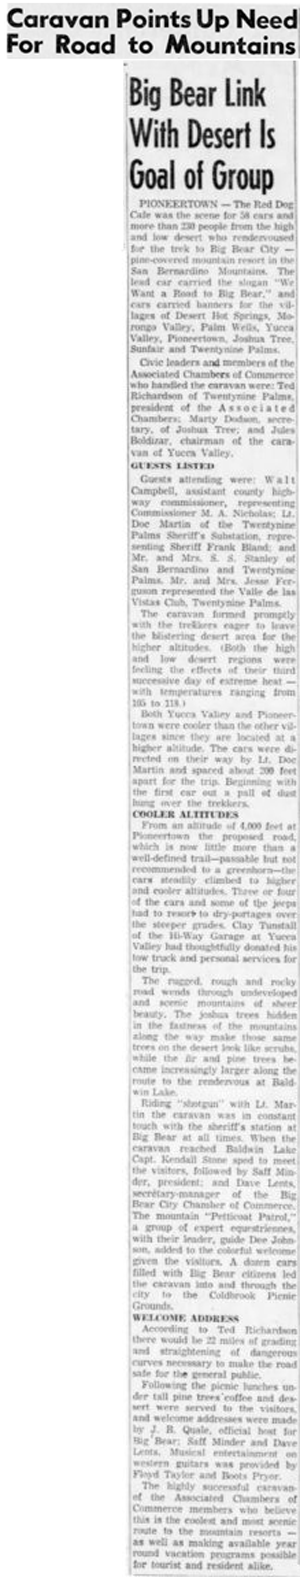 Jun. 12, 1955 - The San Bernardino County Sun